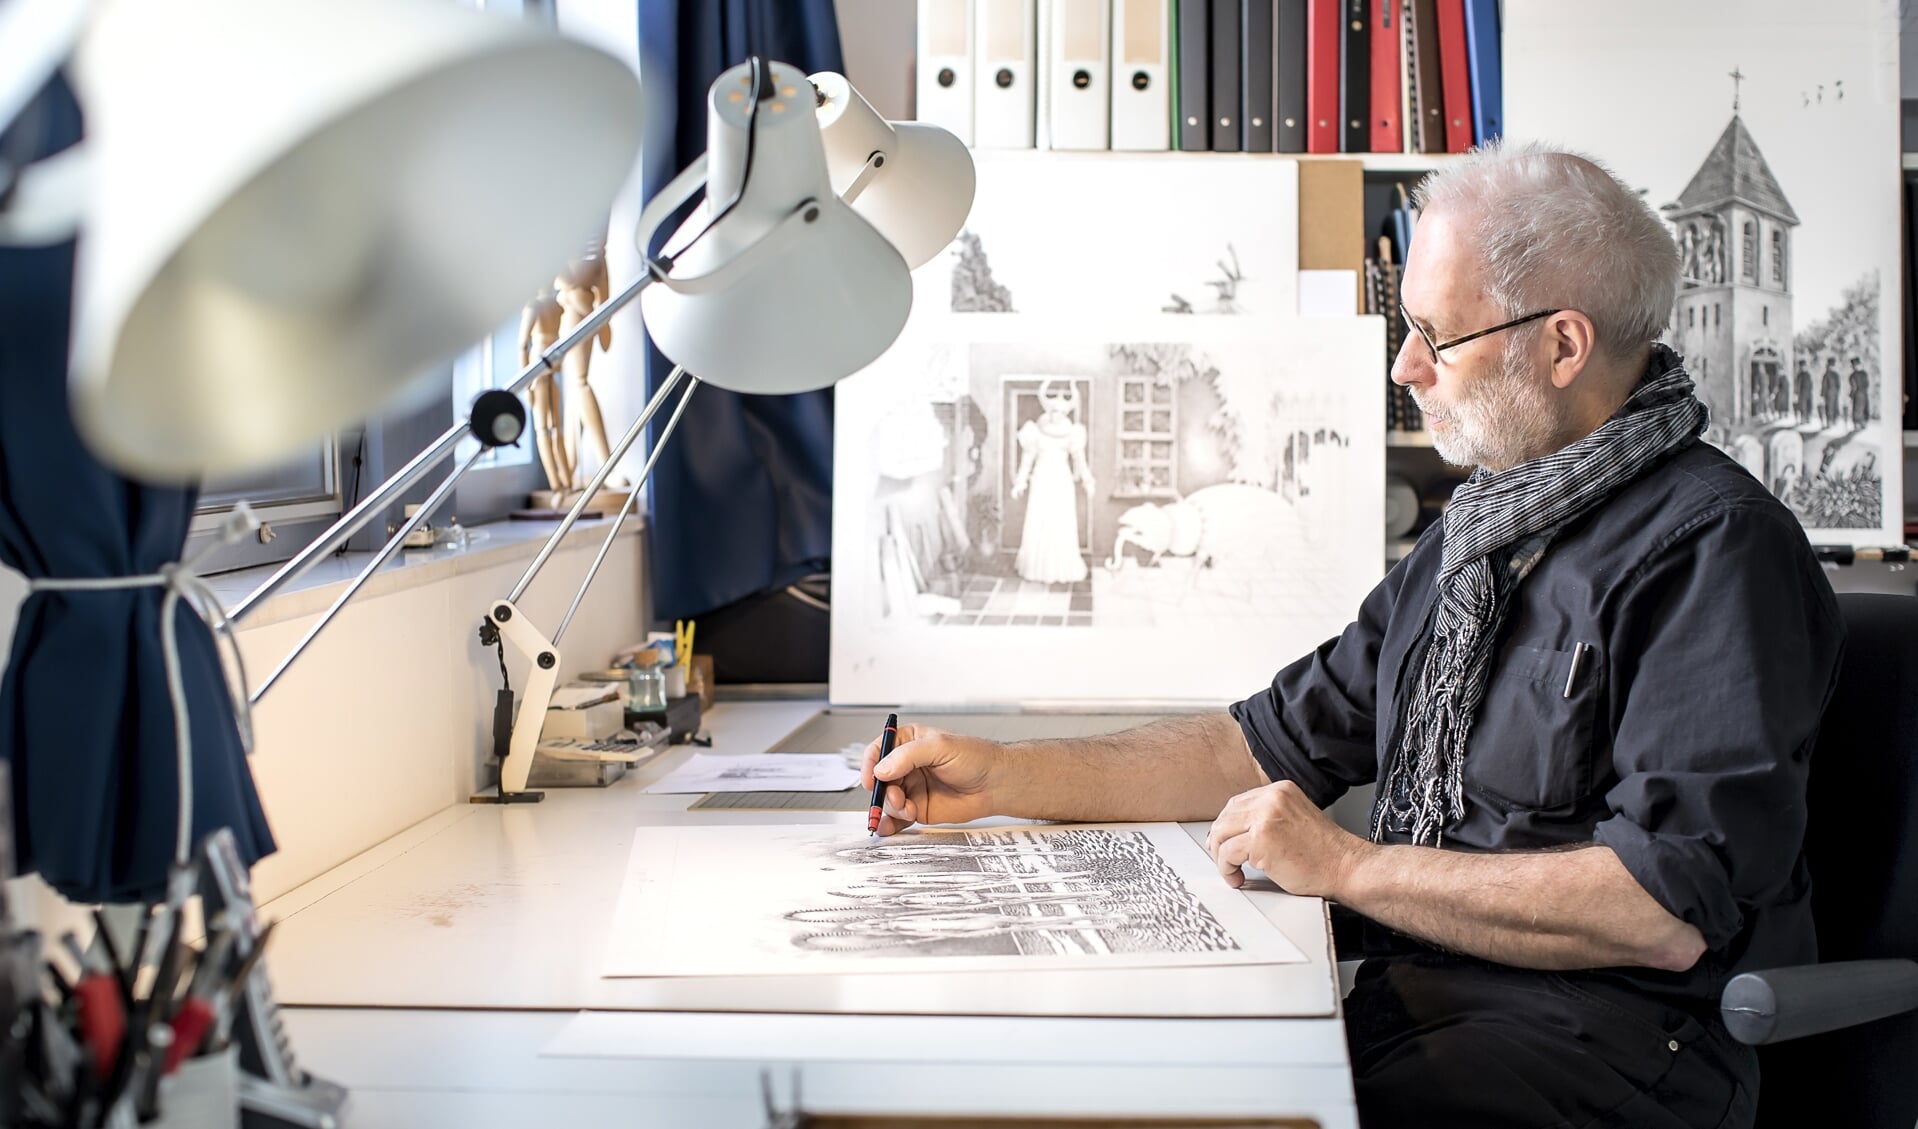 Jan Vosman is tekenaar. Hij liet hij het lesgeven achter zich om zich volledig te storten op zijn tekenwerk.